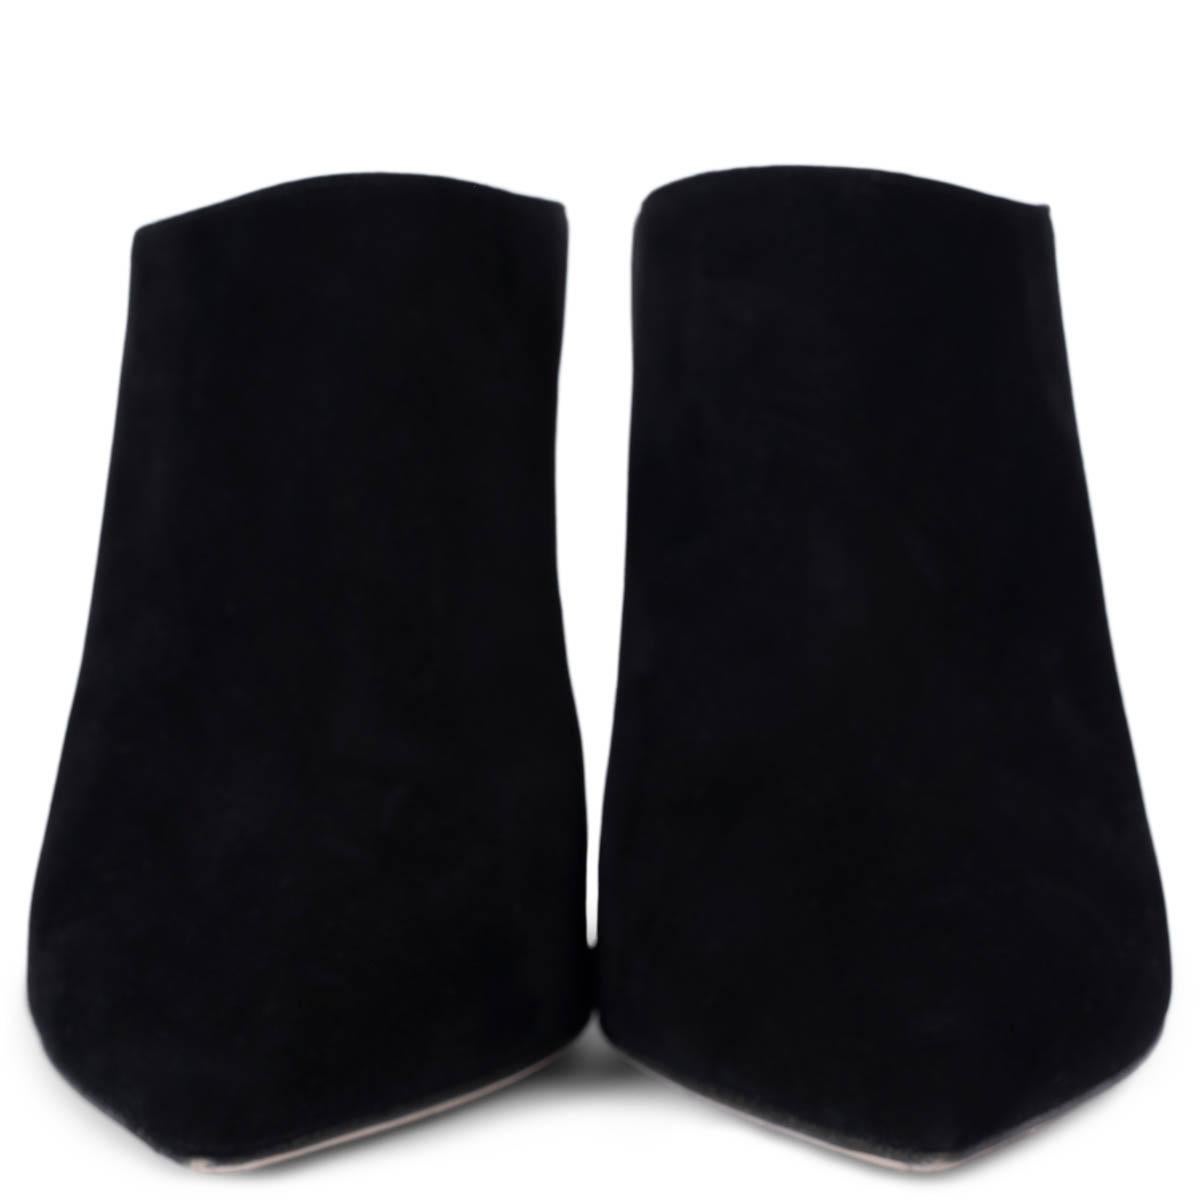 100% authentische Sergio Rossi Pantoletten aus schwarzem Veloursleder mit spitzer Spitze. Sie wurden getragen und sind in ausgezeichnetem Zustand. 

Messungen
Aufgedruckte Größe	38.5
Schuhgröße	38.5
Innensohle	25cm (9.8in)
Breite	7.5cm